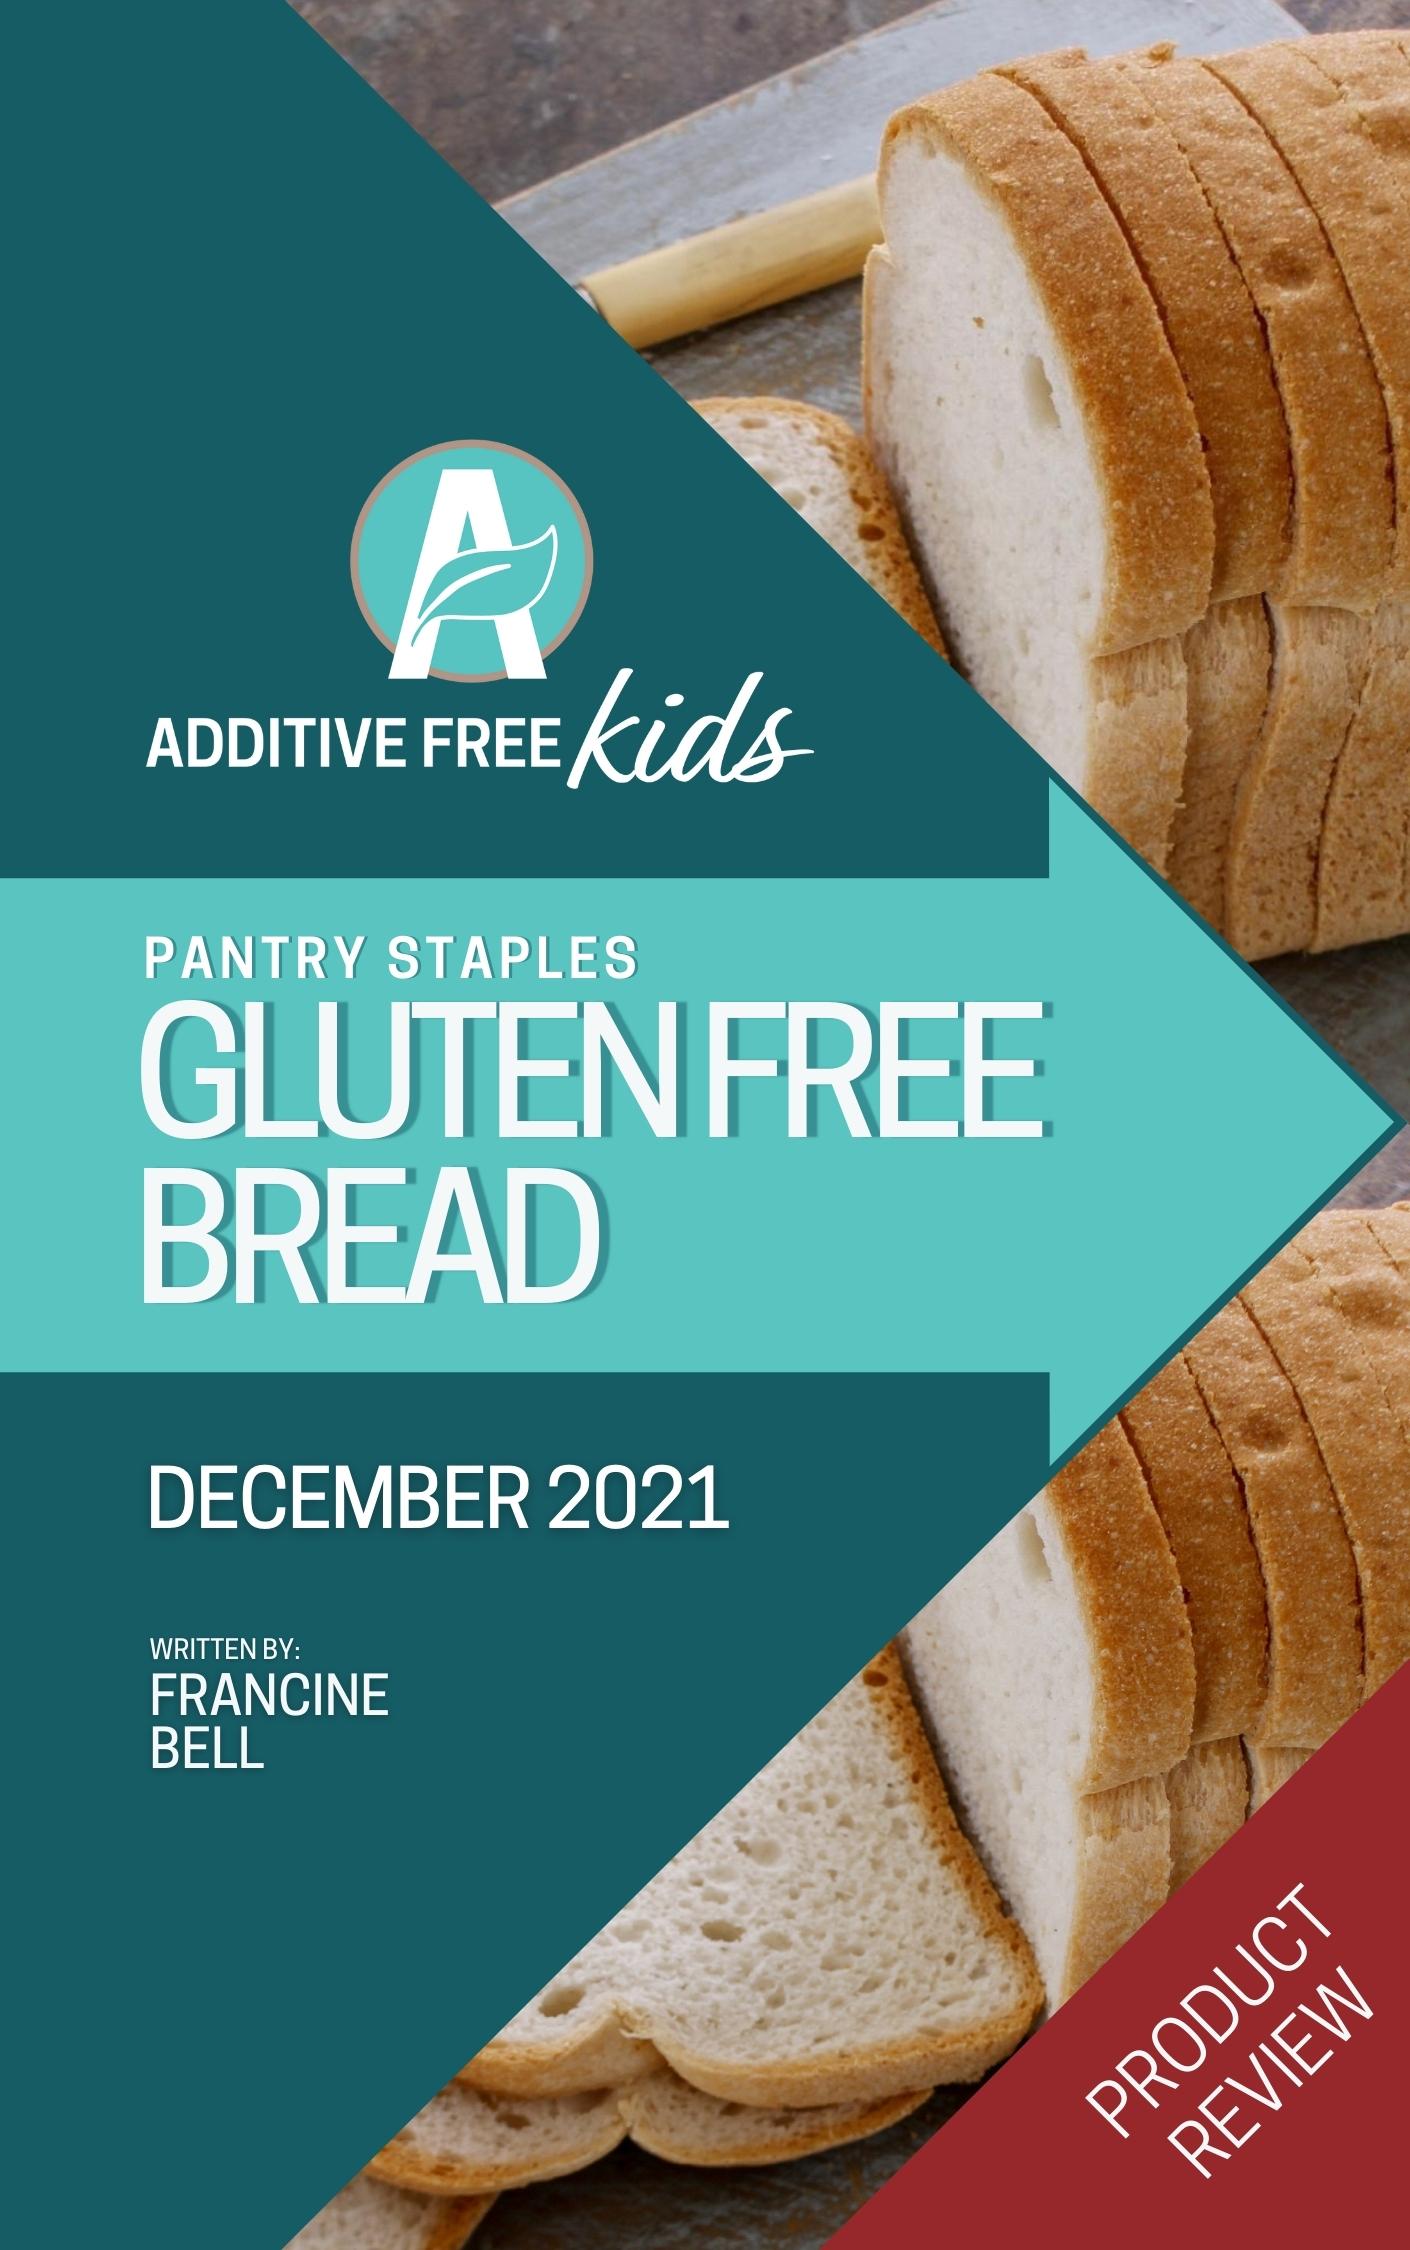 Best gluten free bread to buy